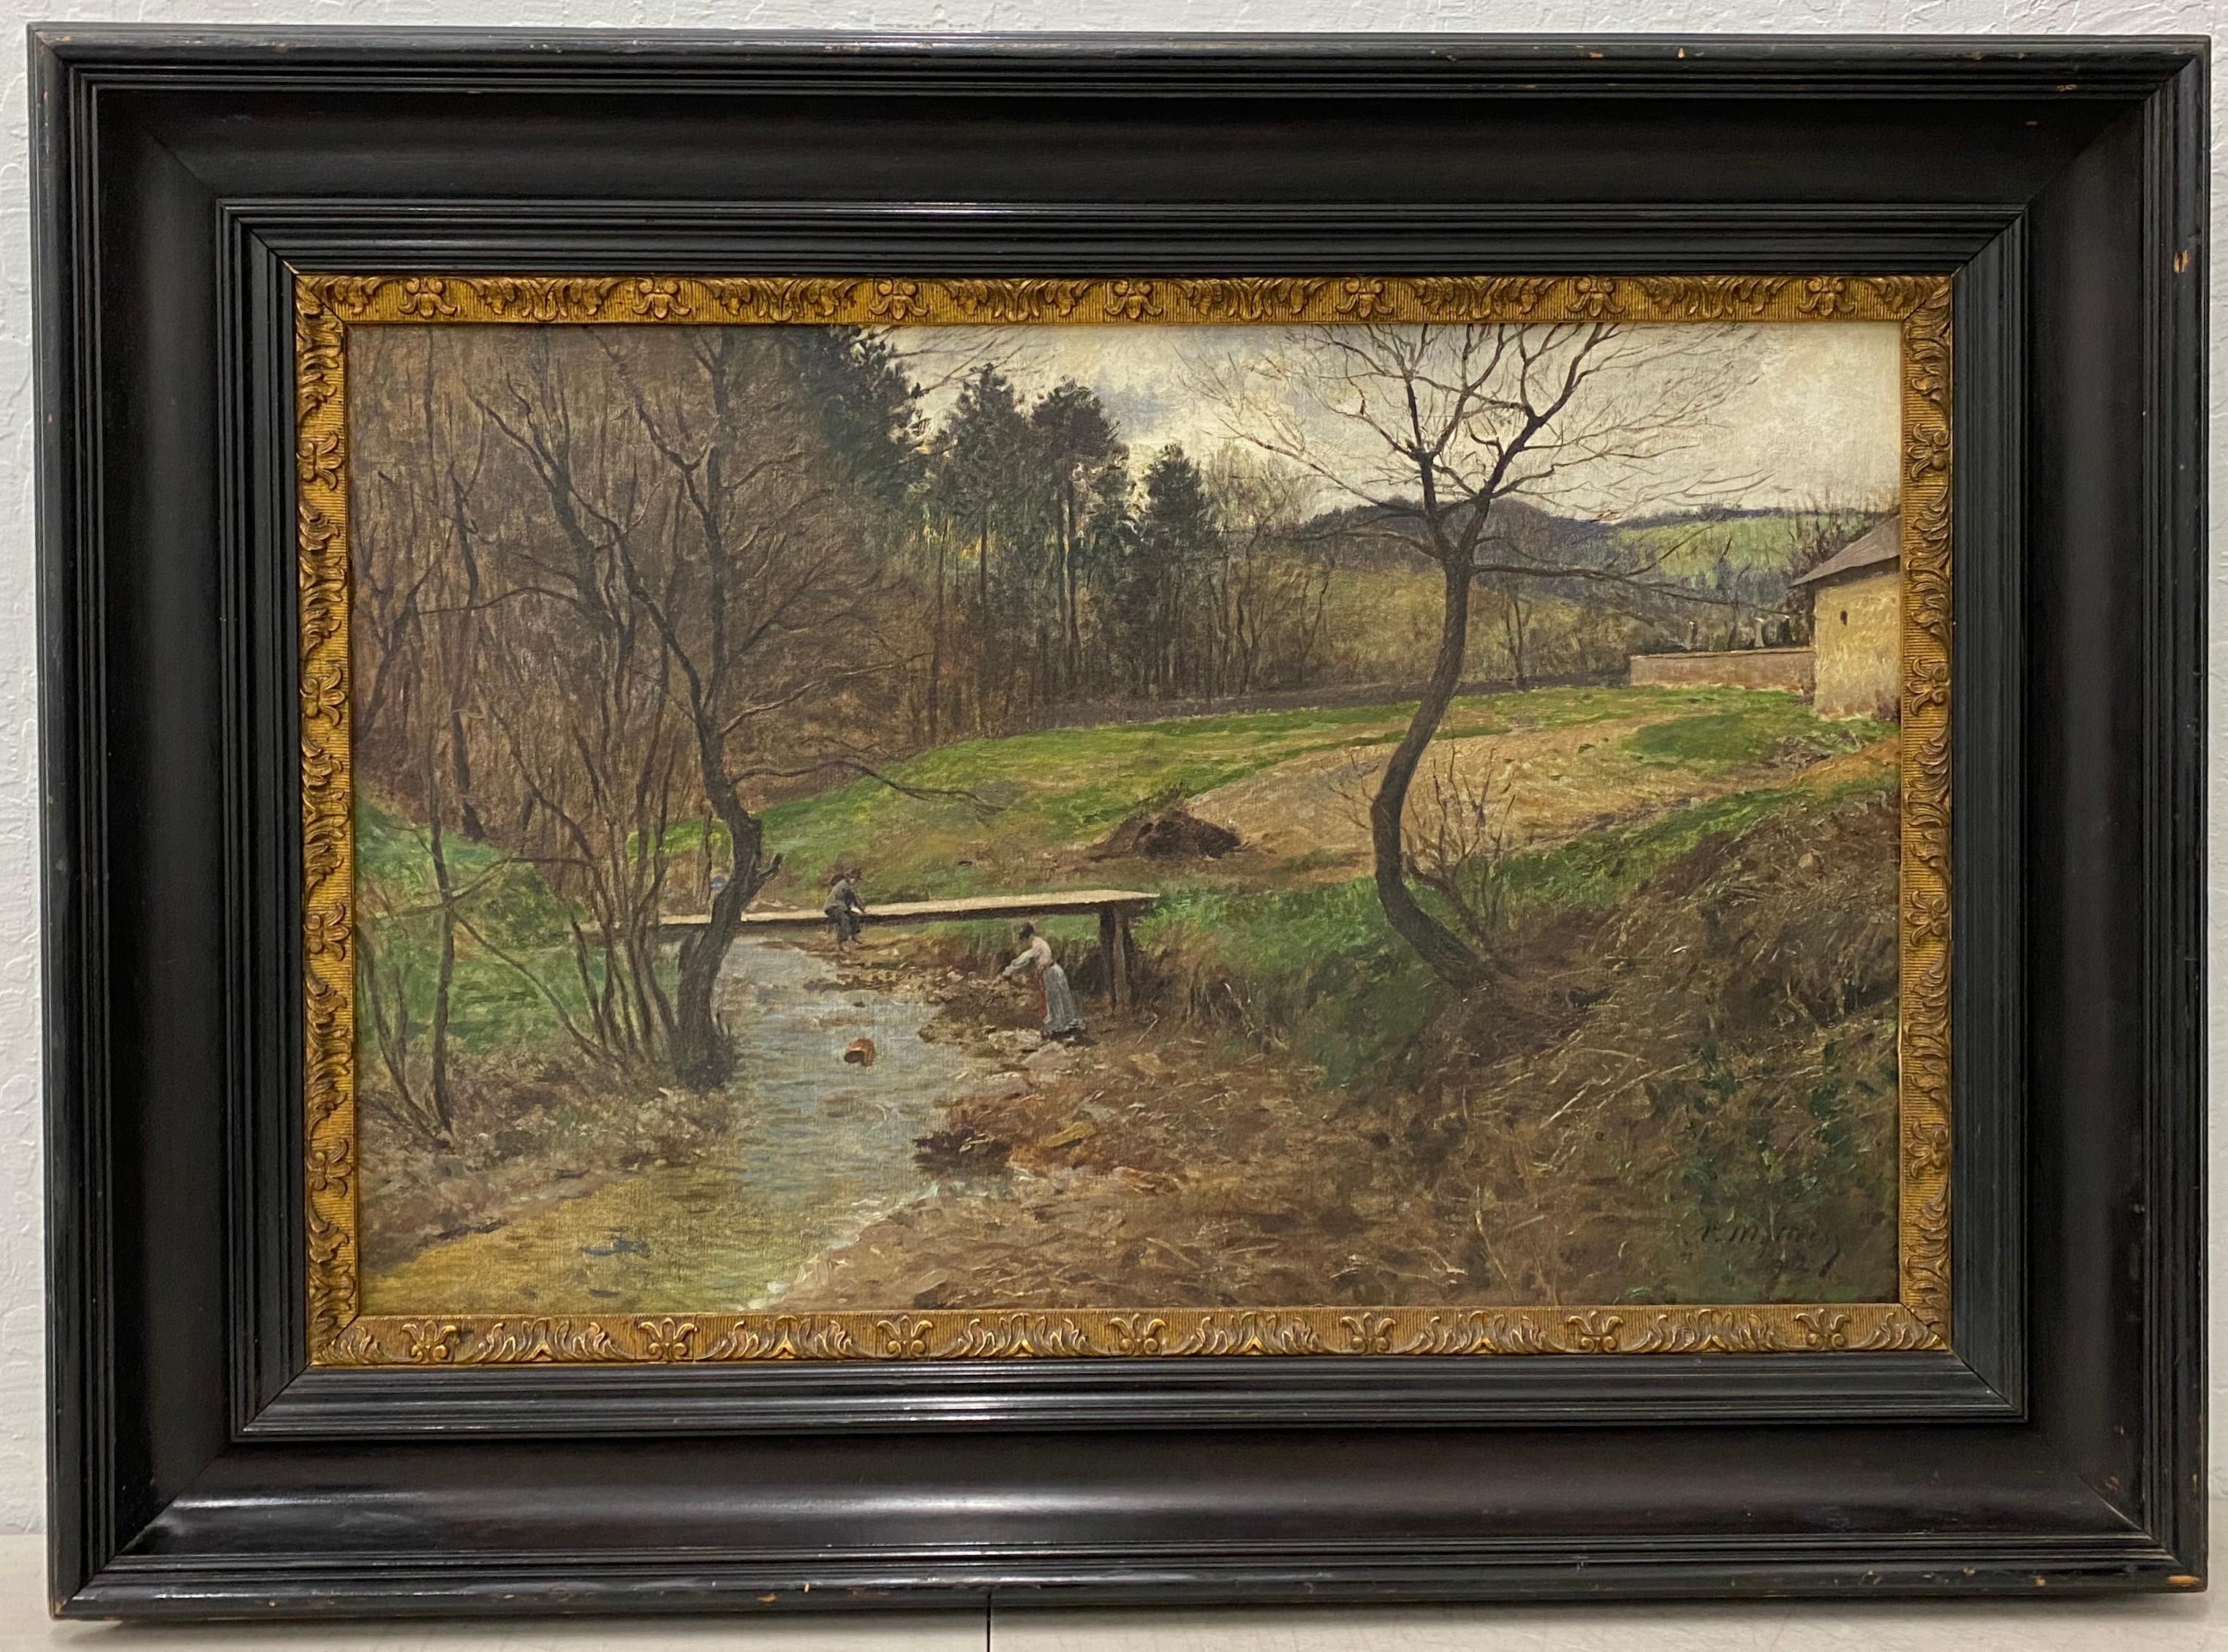 Victor Mytteis (1874-1936) Paysage hongrois avec personnages c.1902

Charmante peinture à l'huile intitulée "Un ruisseau avec un banc"

Huile originale sur toile de l'artiste hongrois Victor Mytteis.

Dimensions de la toile : 20,5" x 18,5". Le cadre